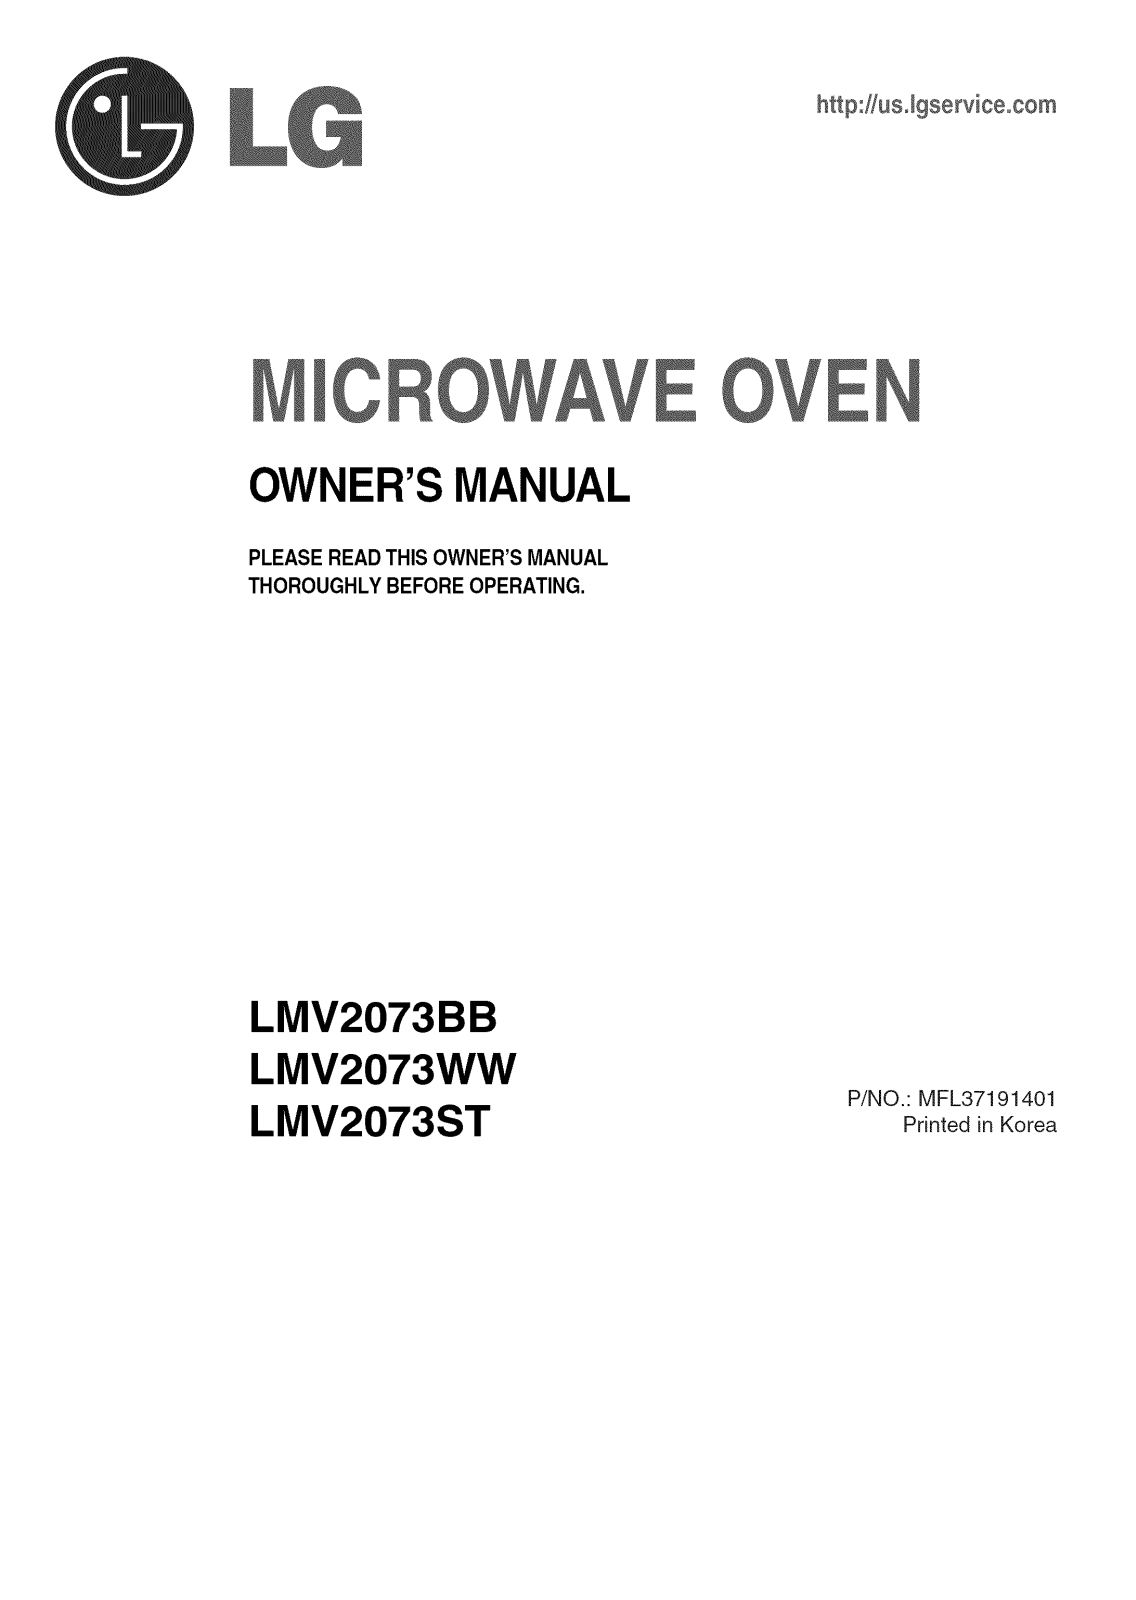 LG LMV2073WW/00, LMV2073ST/00, LMV2073BB/00 Owner’s Manual